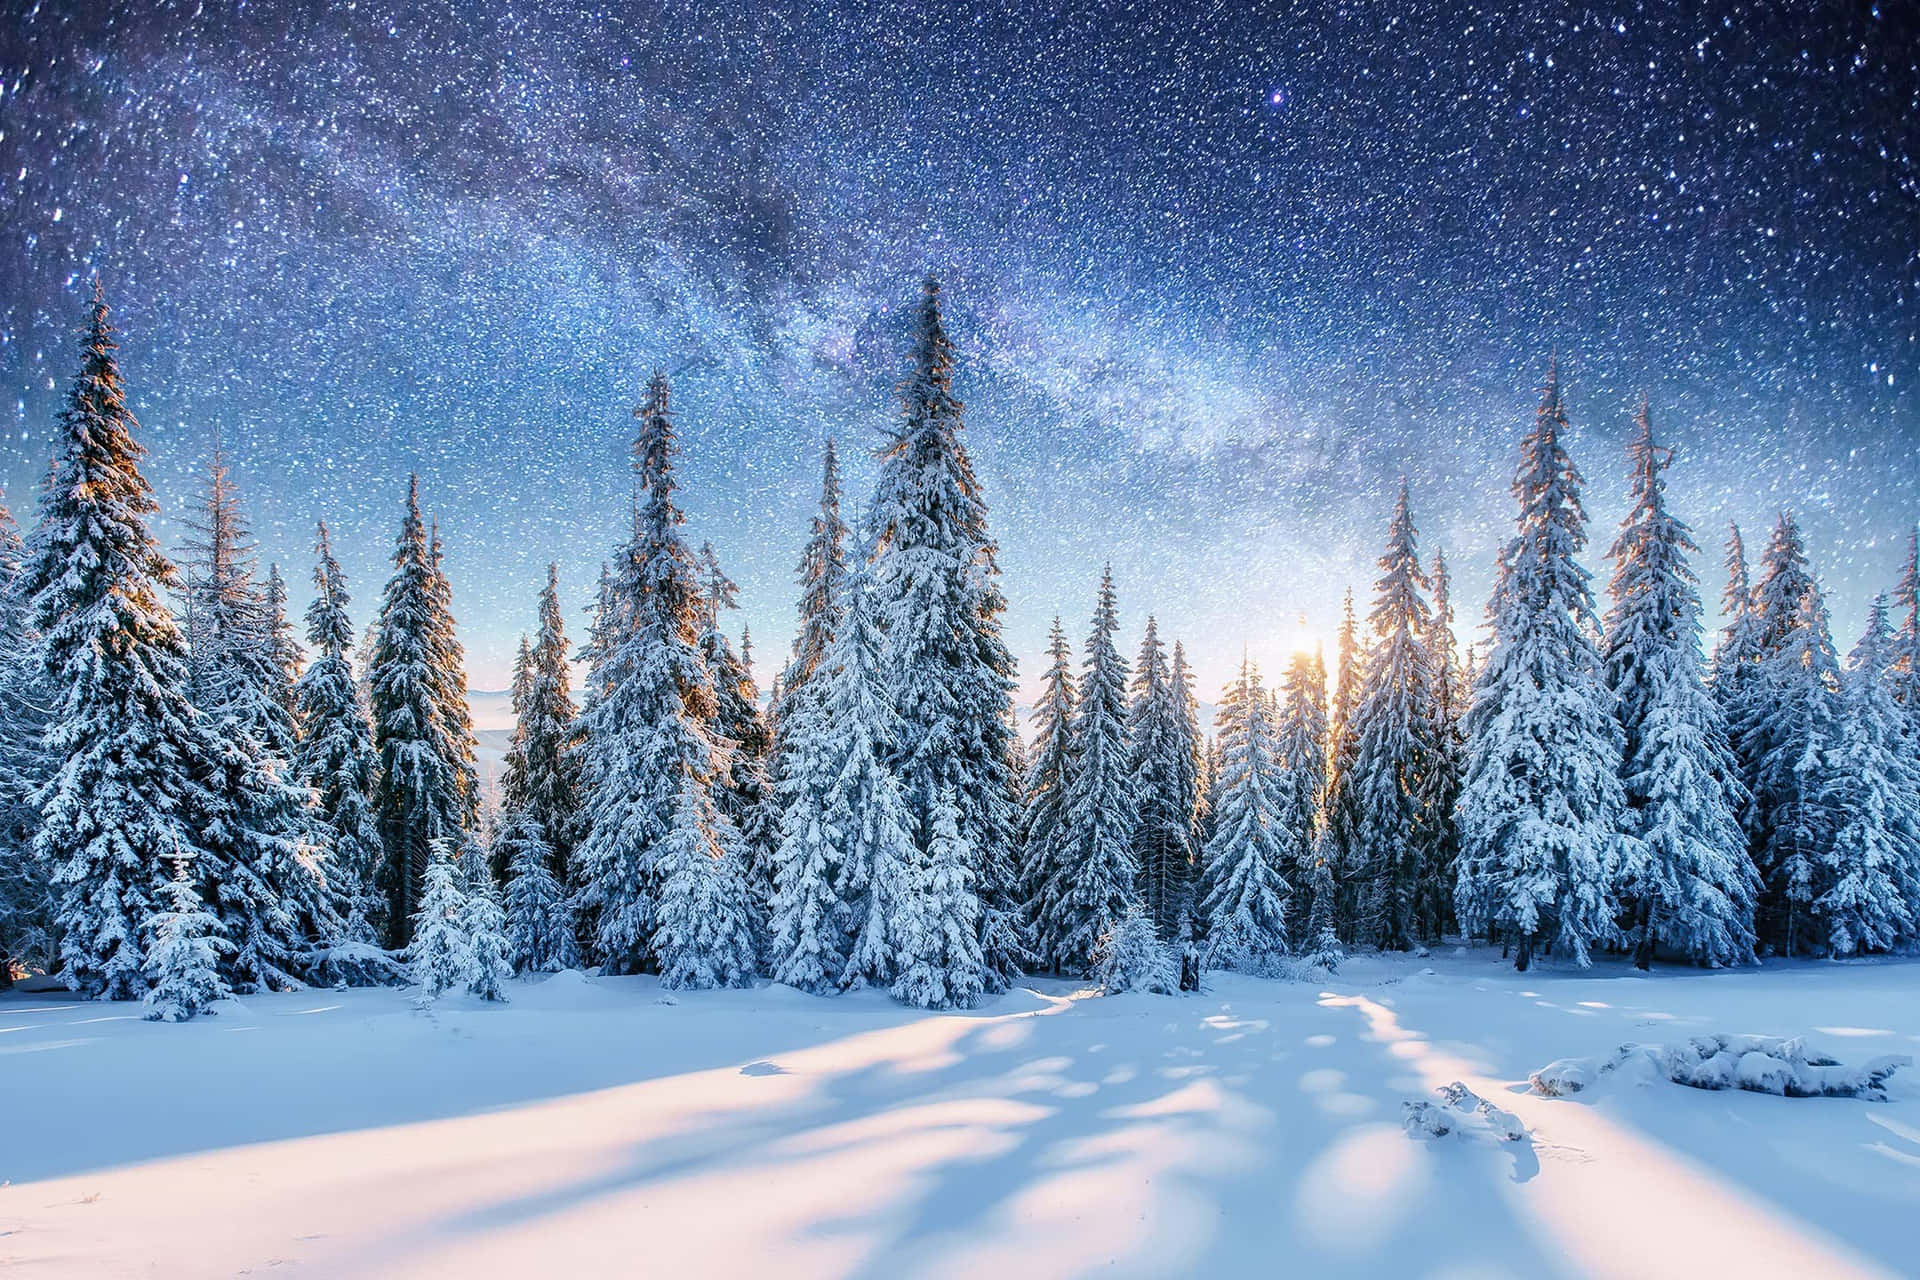 Unaimpresionante Pintura De Invierno Con Hipnotizante Nieve Blanca Y Hermosos Paisajes Naturales En El Fondo.